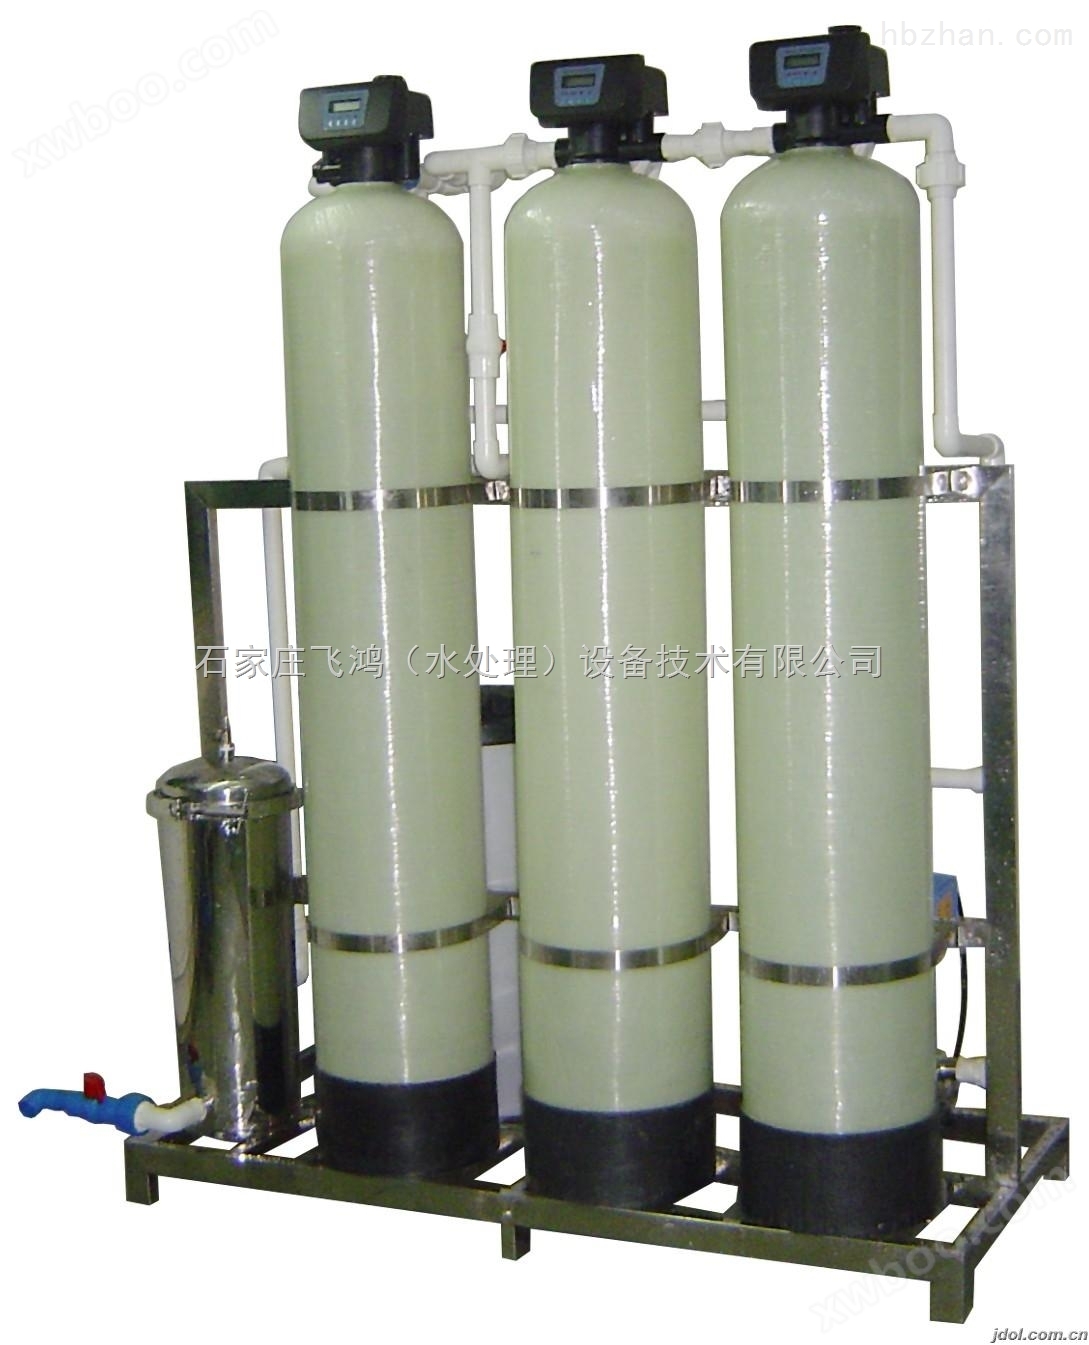 石家庄软化水设备生产厂家/价格